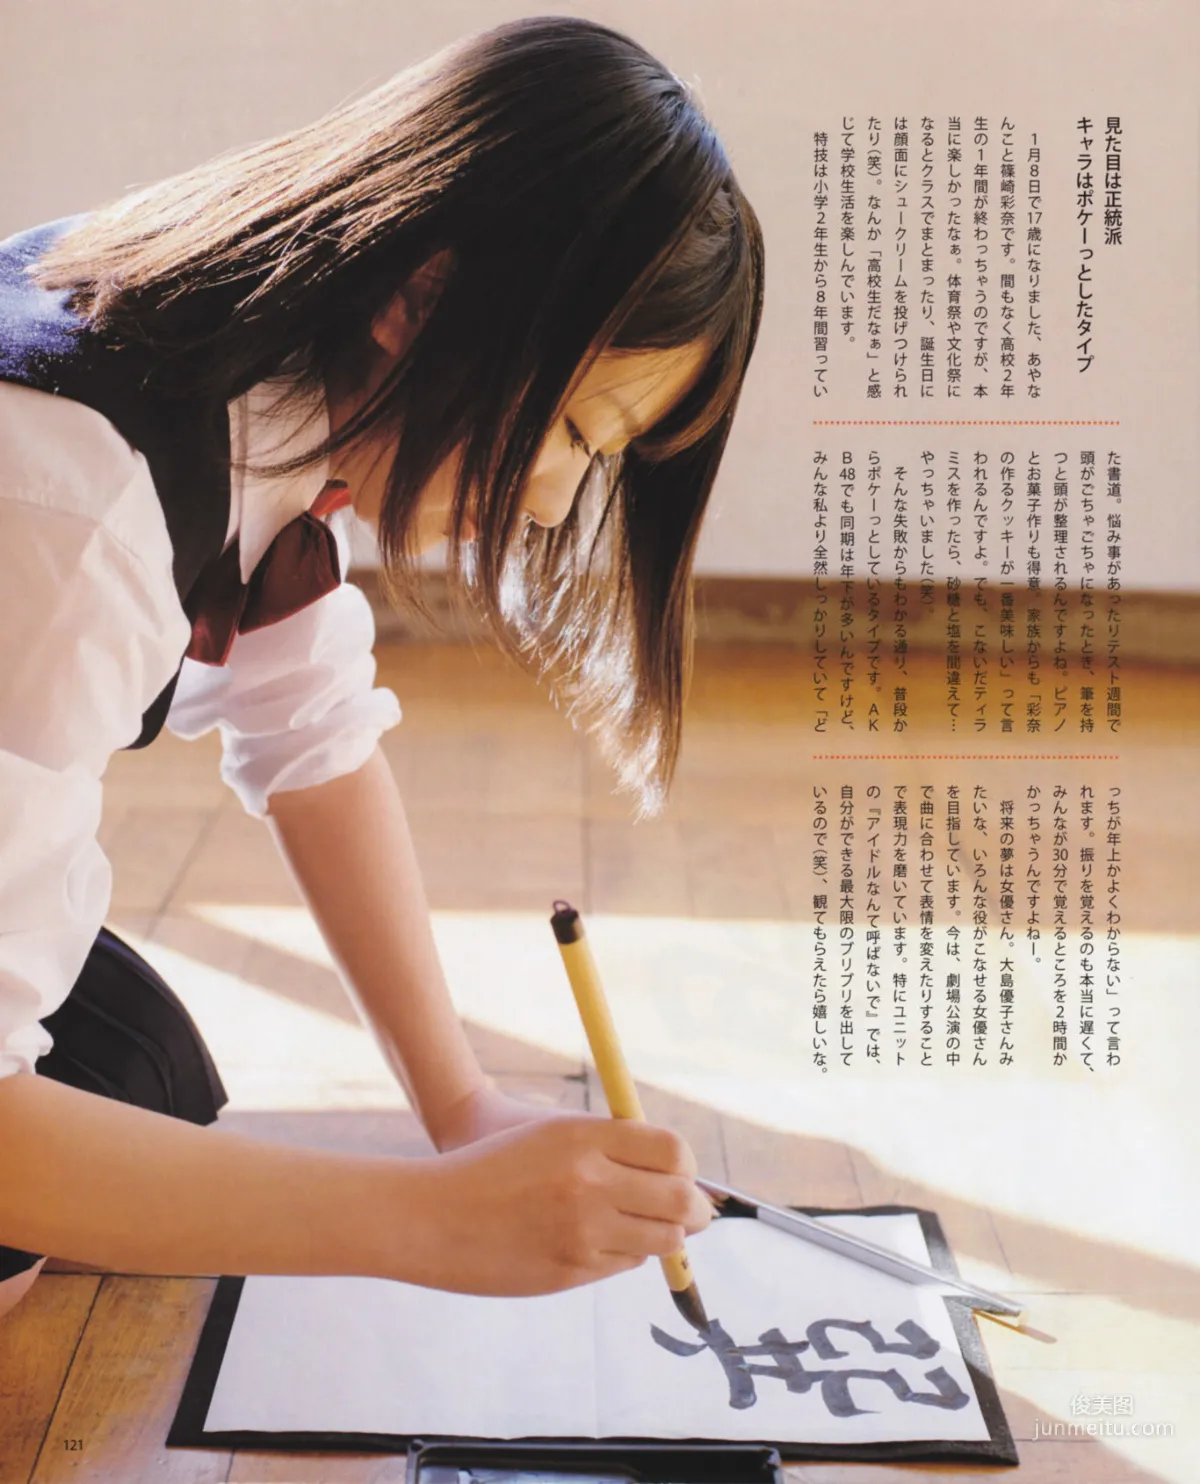 [Bomb Magazine] 2013年No.03 渡边麻友 秋元才加 AKB48 写真杂志30